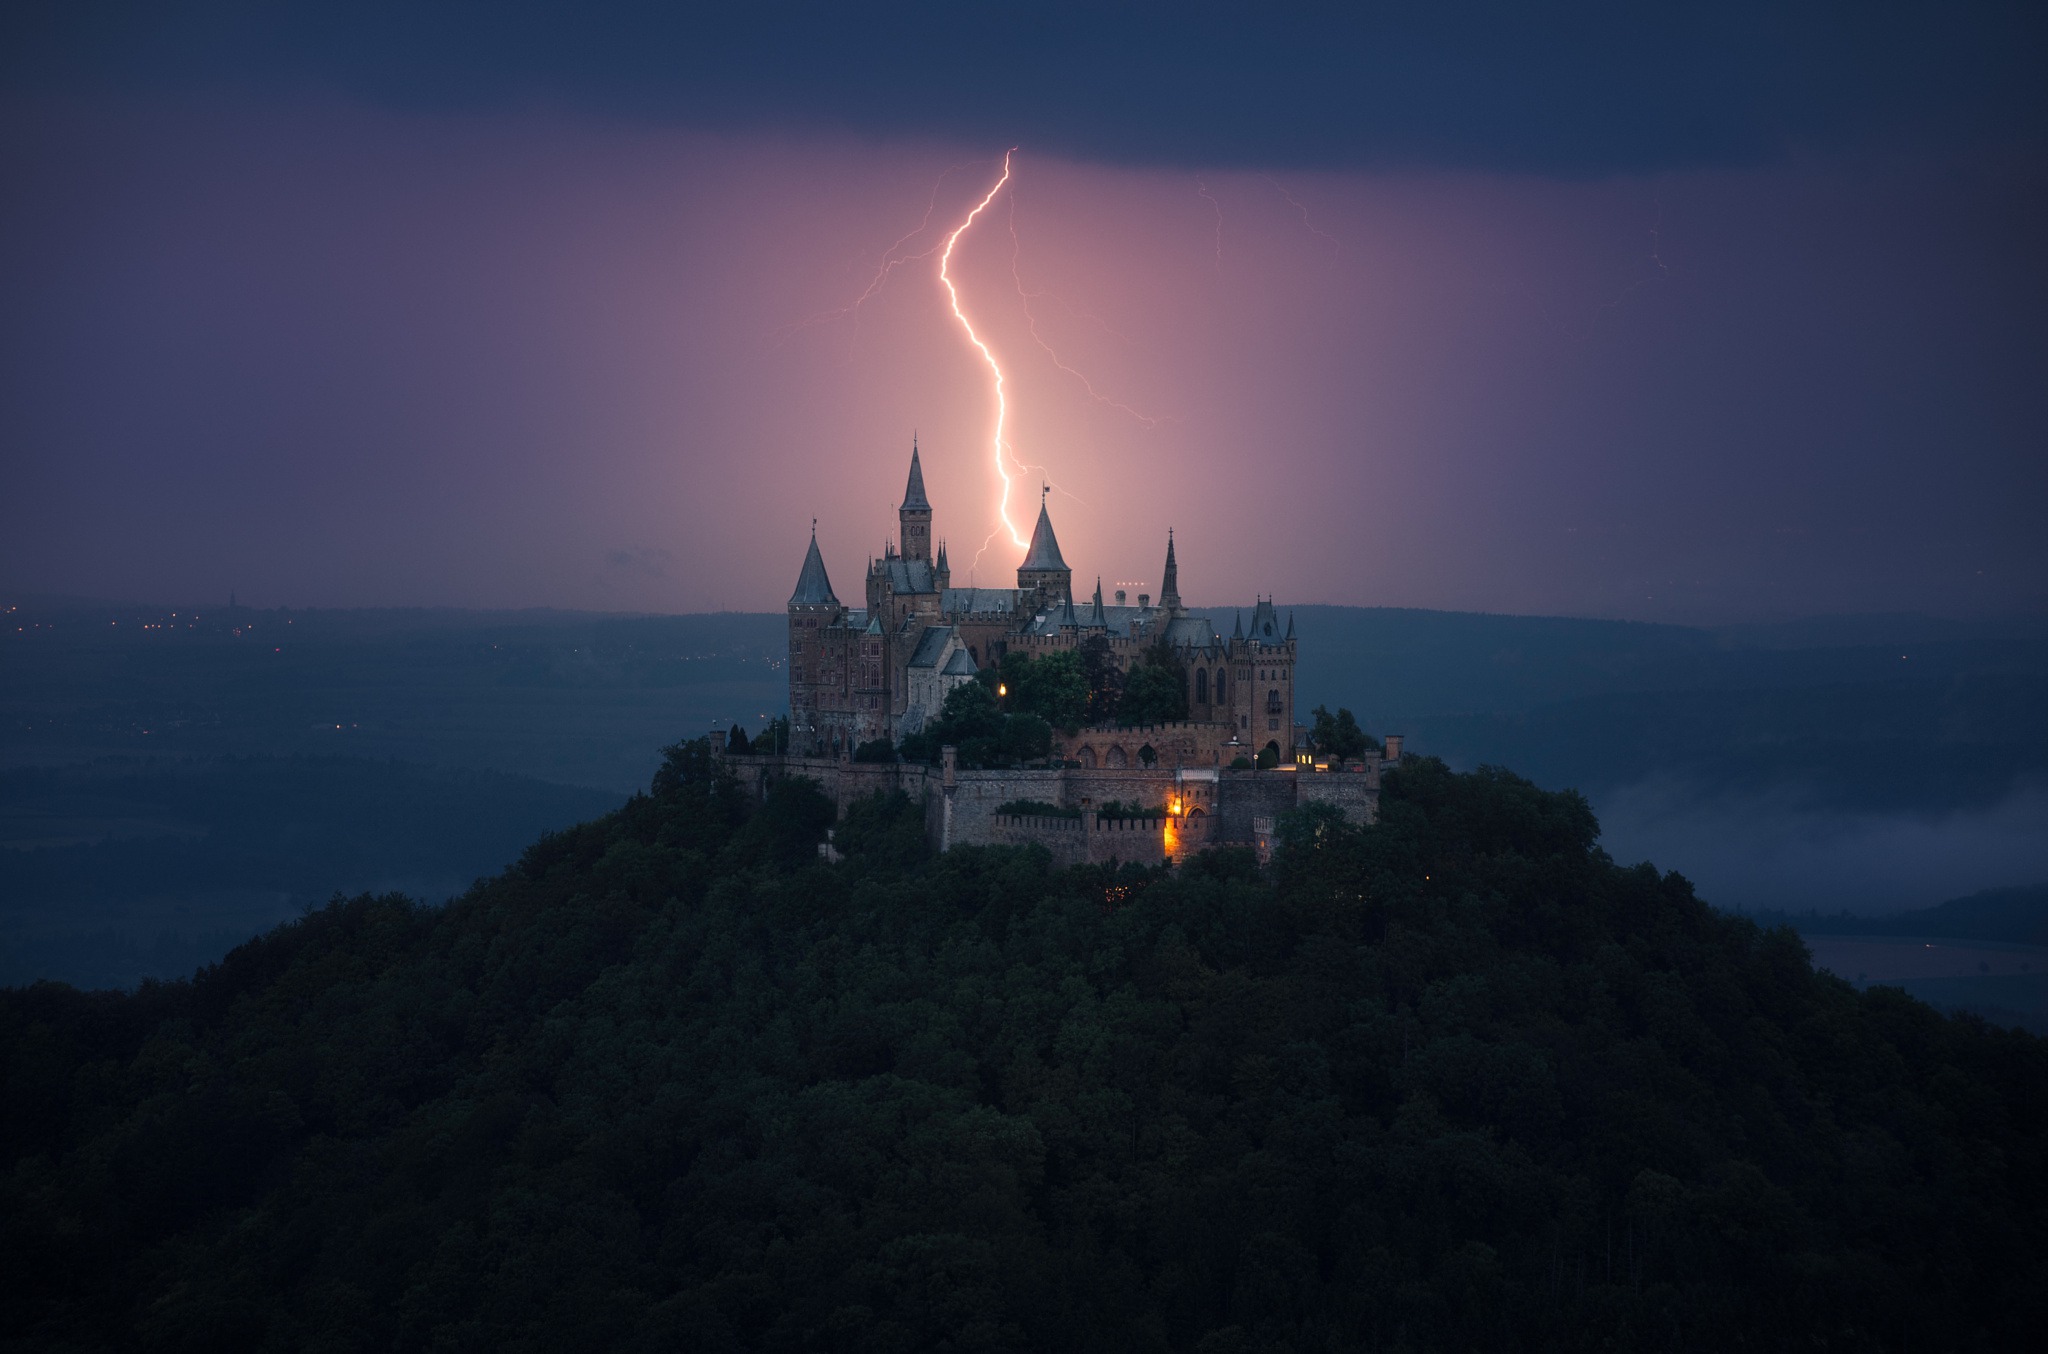 General 2048x1354 Germany Hohenzollern Castle lightning castle dark landscape building